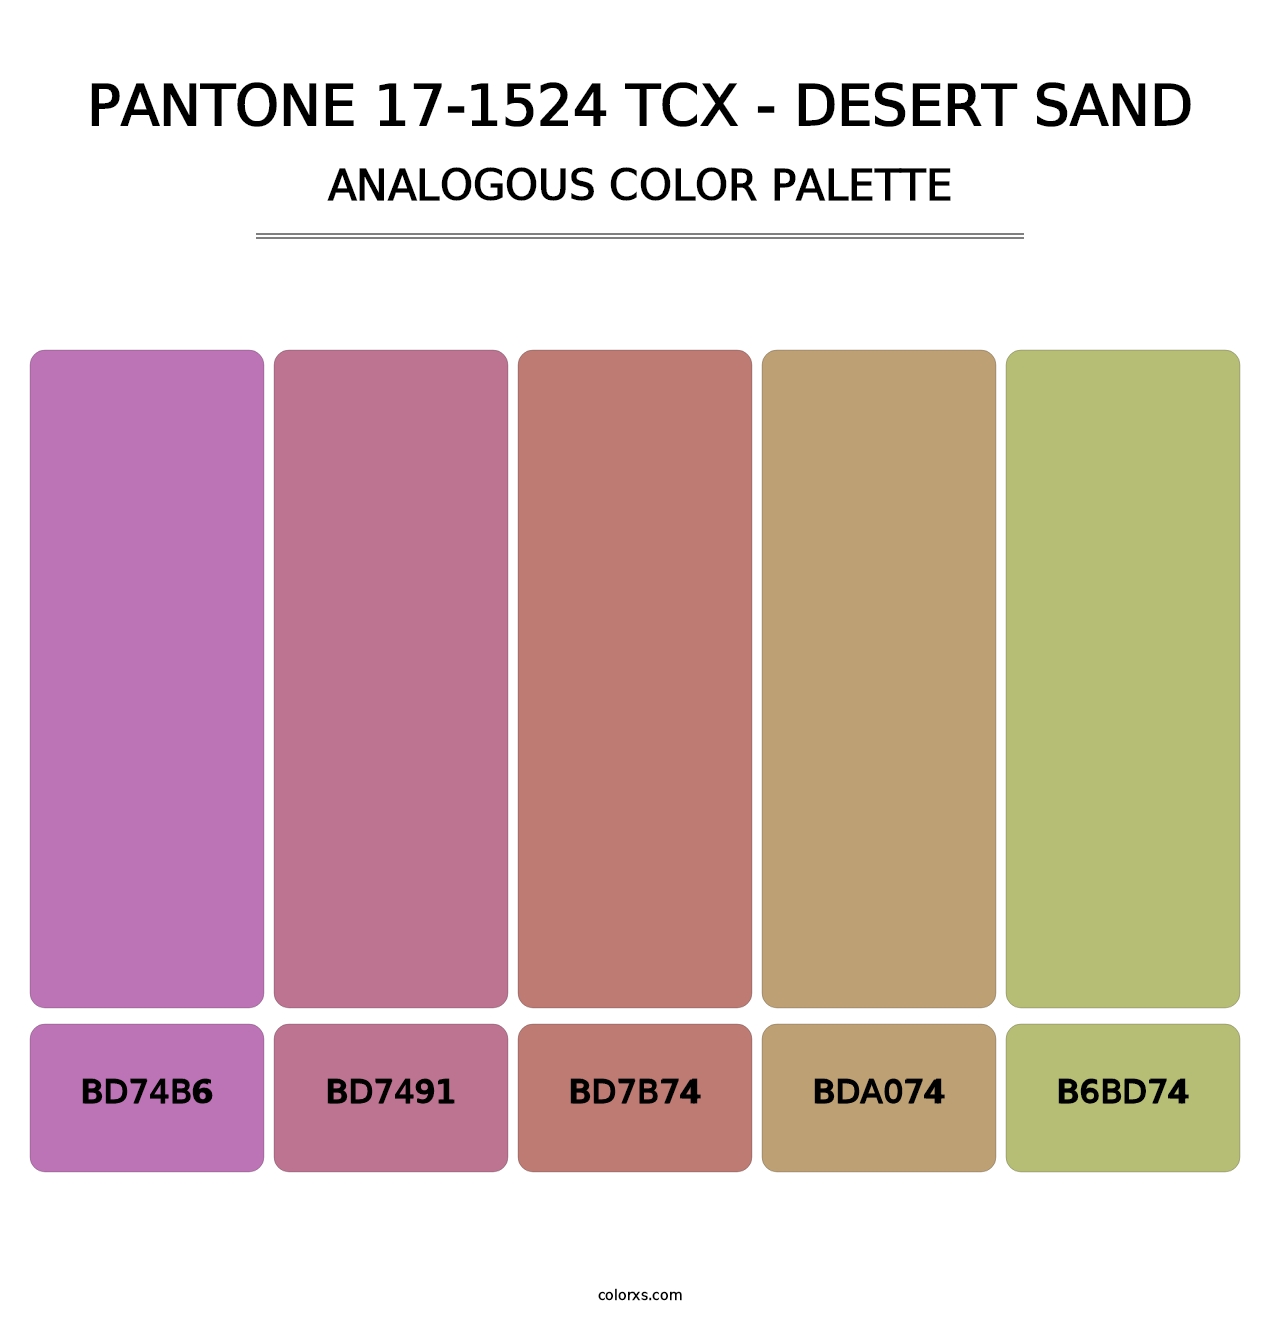 PANTONE 17-1524 TCX - Desert Sand - Analogous Color Palette